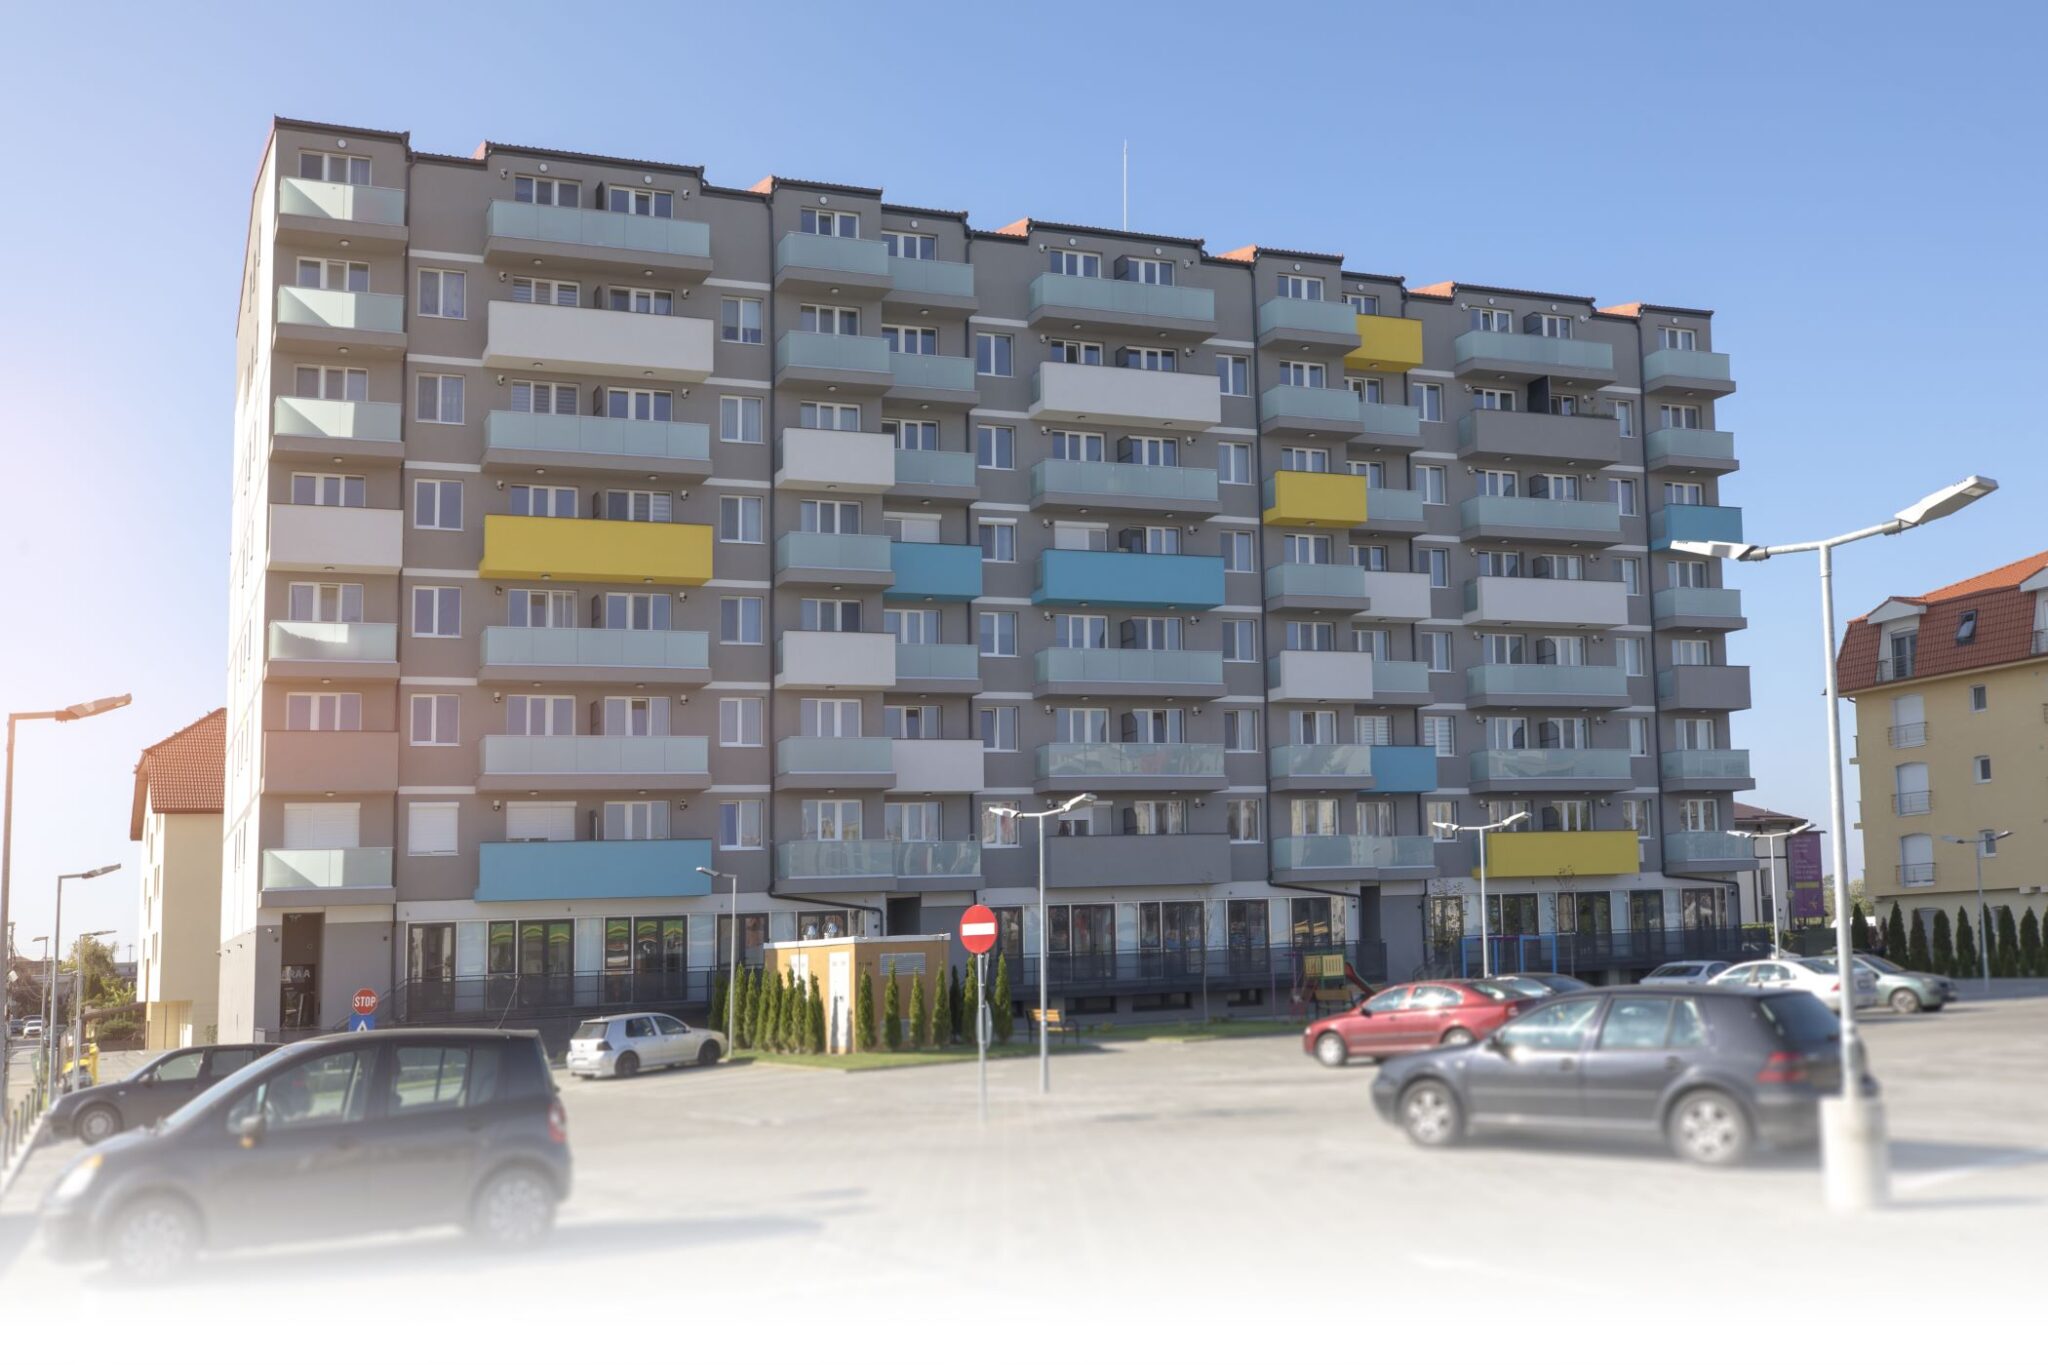 Un proiect sustinut de CANOVA CCM Timisoara, dezvoltator imobiliar cu peste 15 ani experienta in Timisoara.